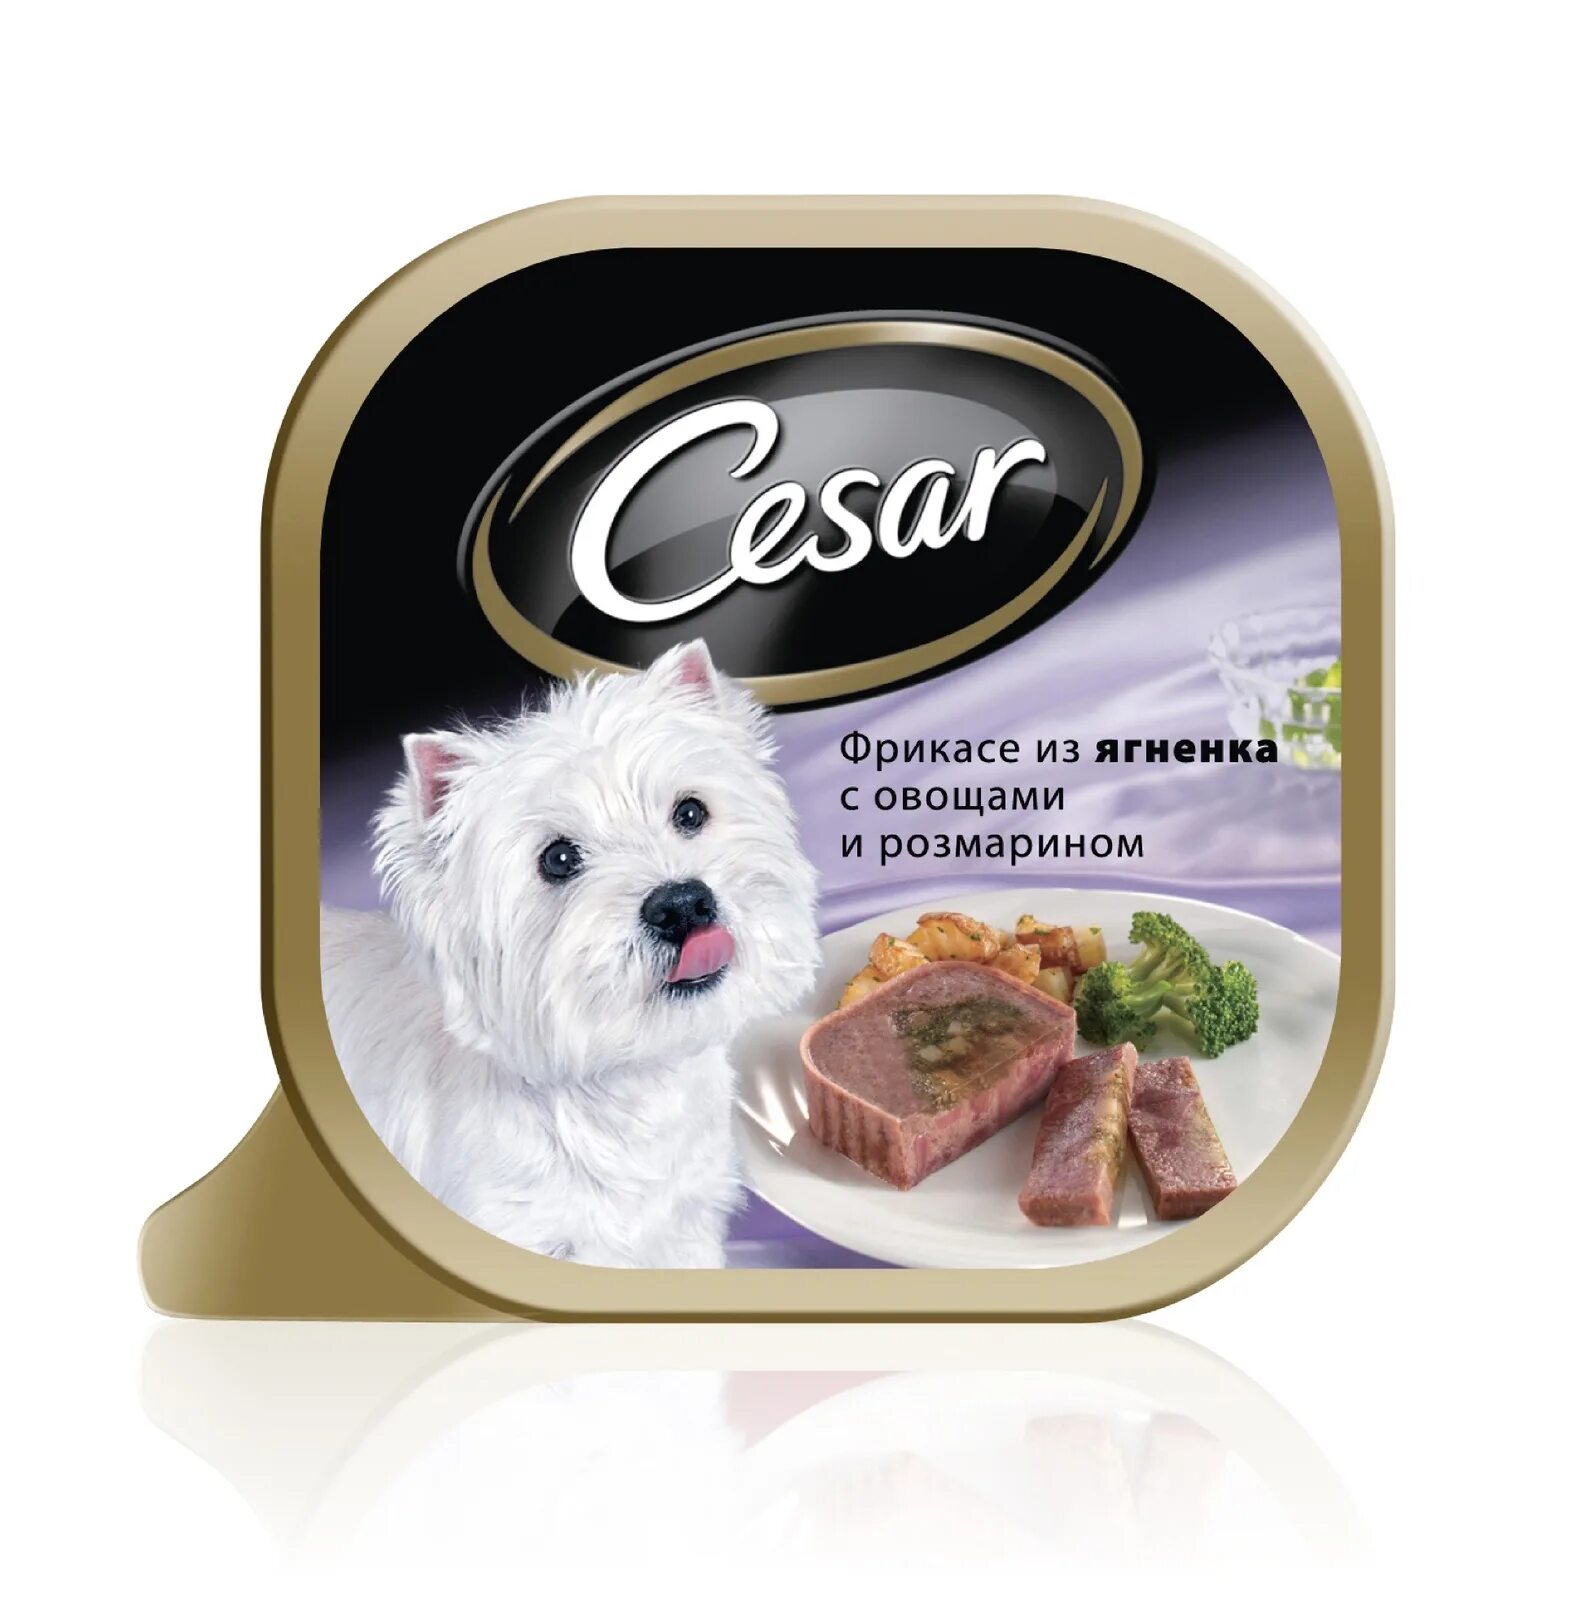 Корм для собак для друга. Влажный корм для собак Cesar из говядины с овощами 100г. Cesar консервы для собак. Влажный корм для собак Cesar.